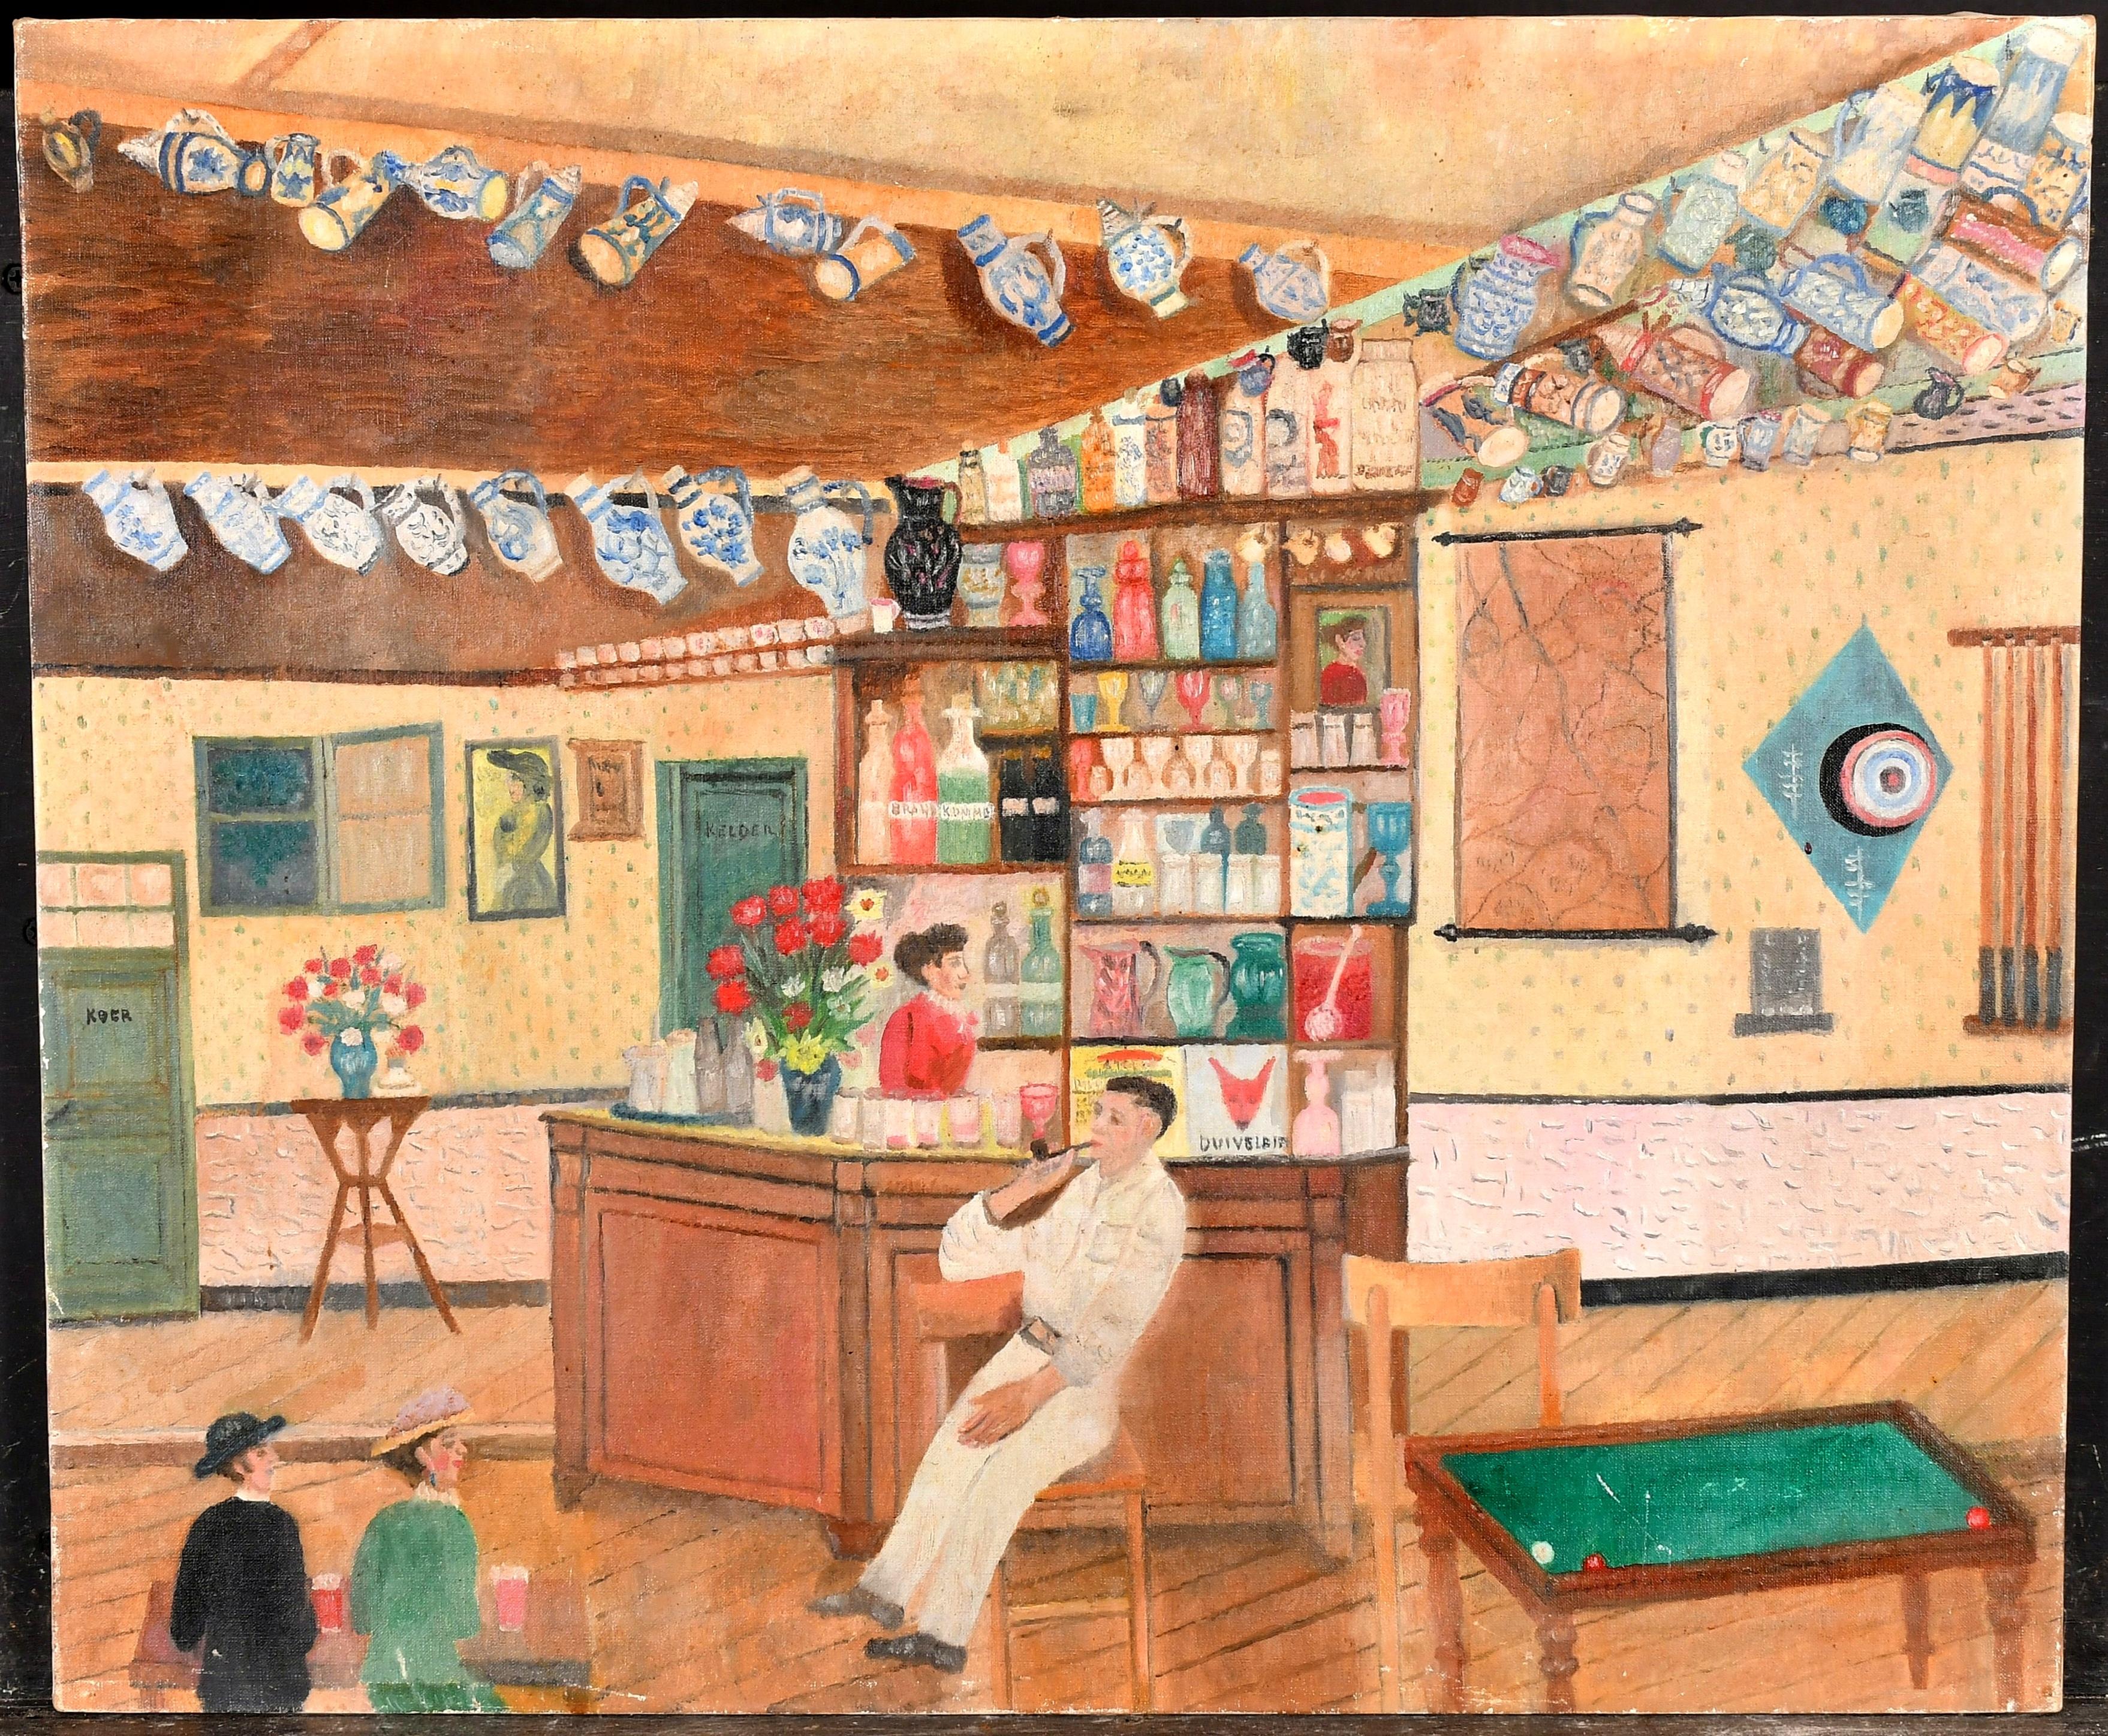 Le bar - Peinture figurative d'un intérieur naïf hollandais du milieu du 20e siècle - Painting de Mid 20th Century Dutch School